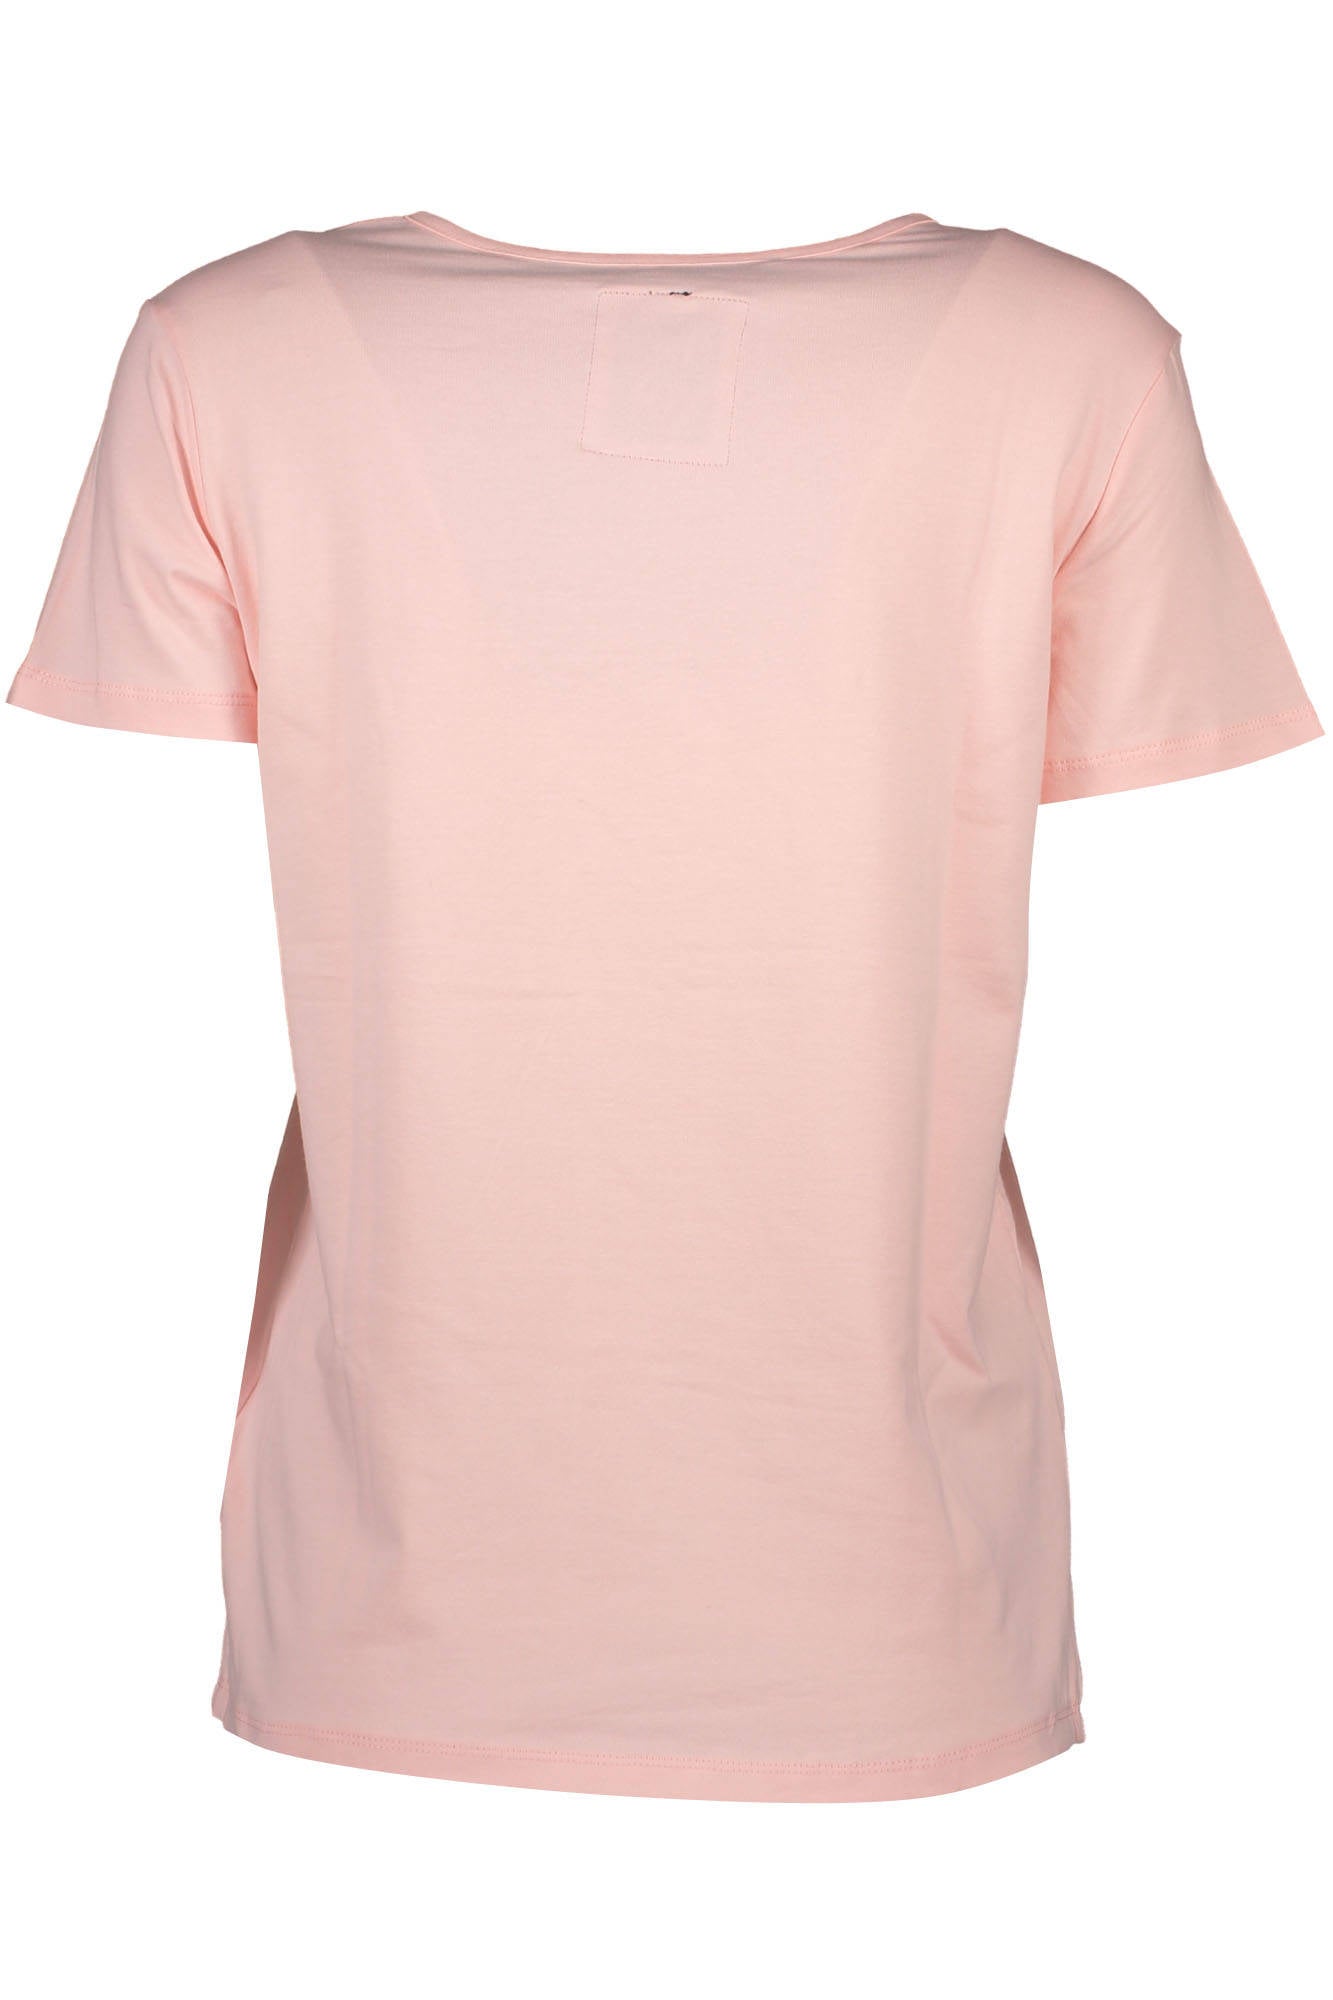 Silvian Heach Pink Tops & T-Shirt - Fizigo